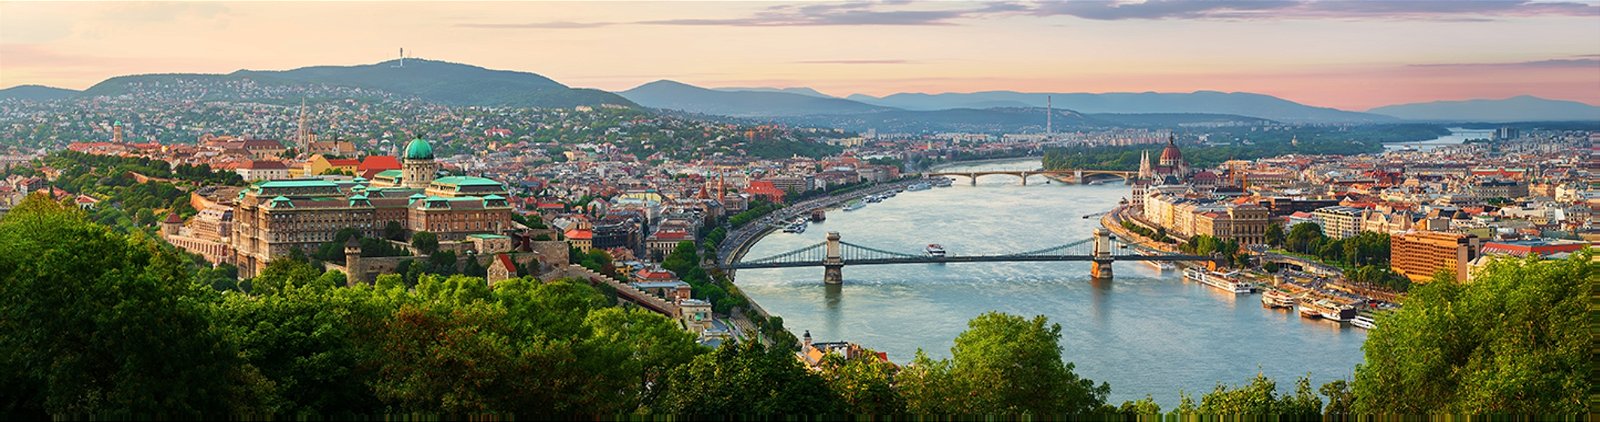 Kurzurlaub in Budapest